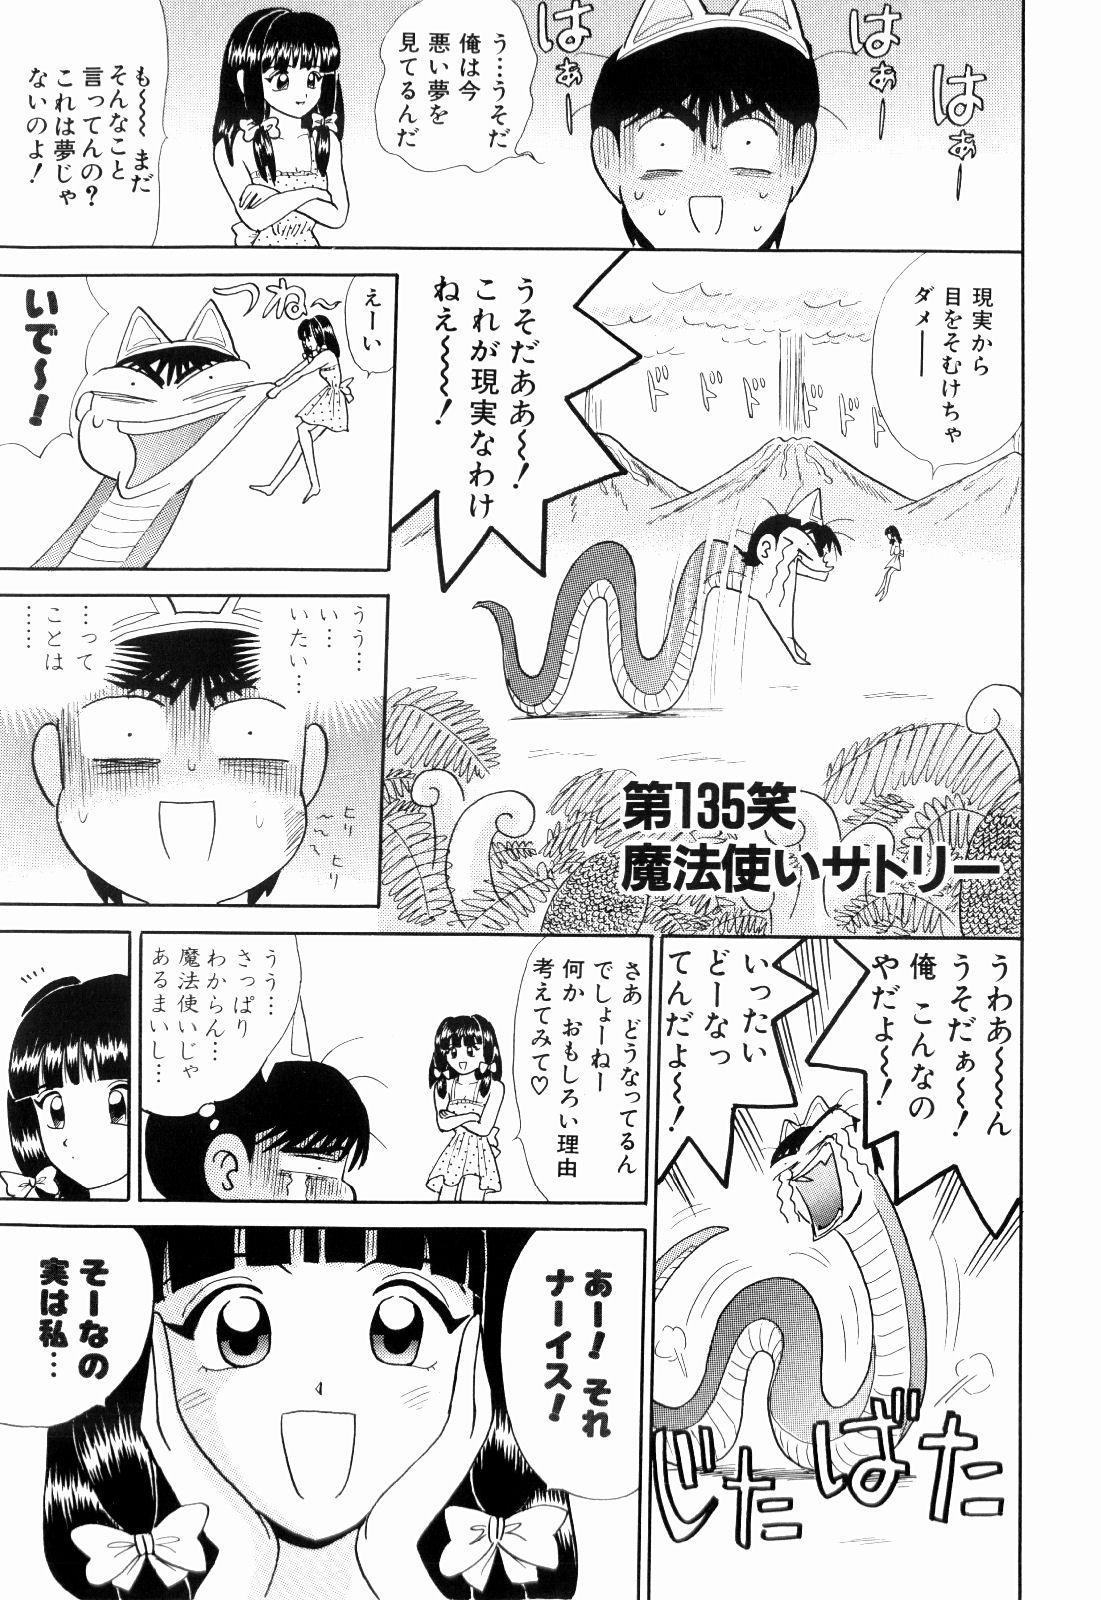 Online Kenjiro Kakimoto - Futari Kurashi 11 Twistys - Page 5